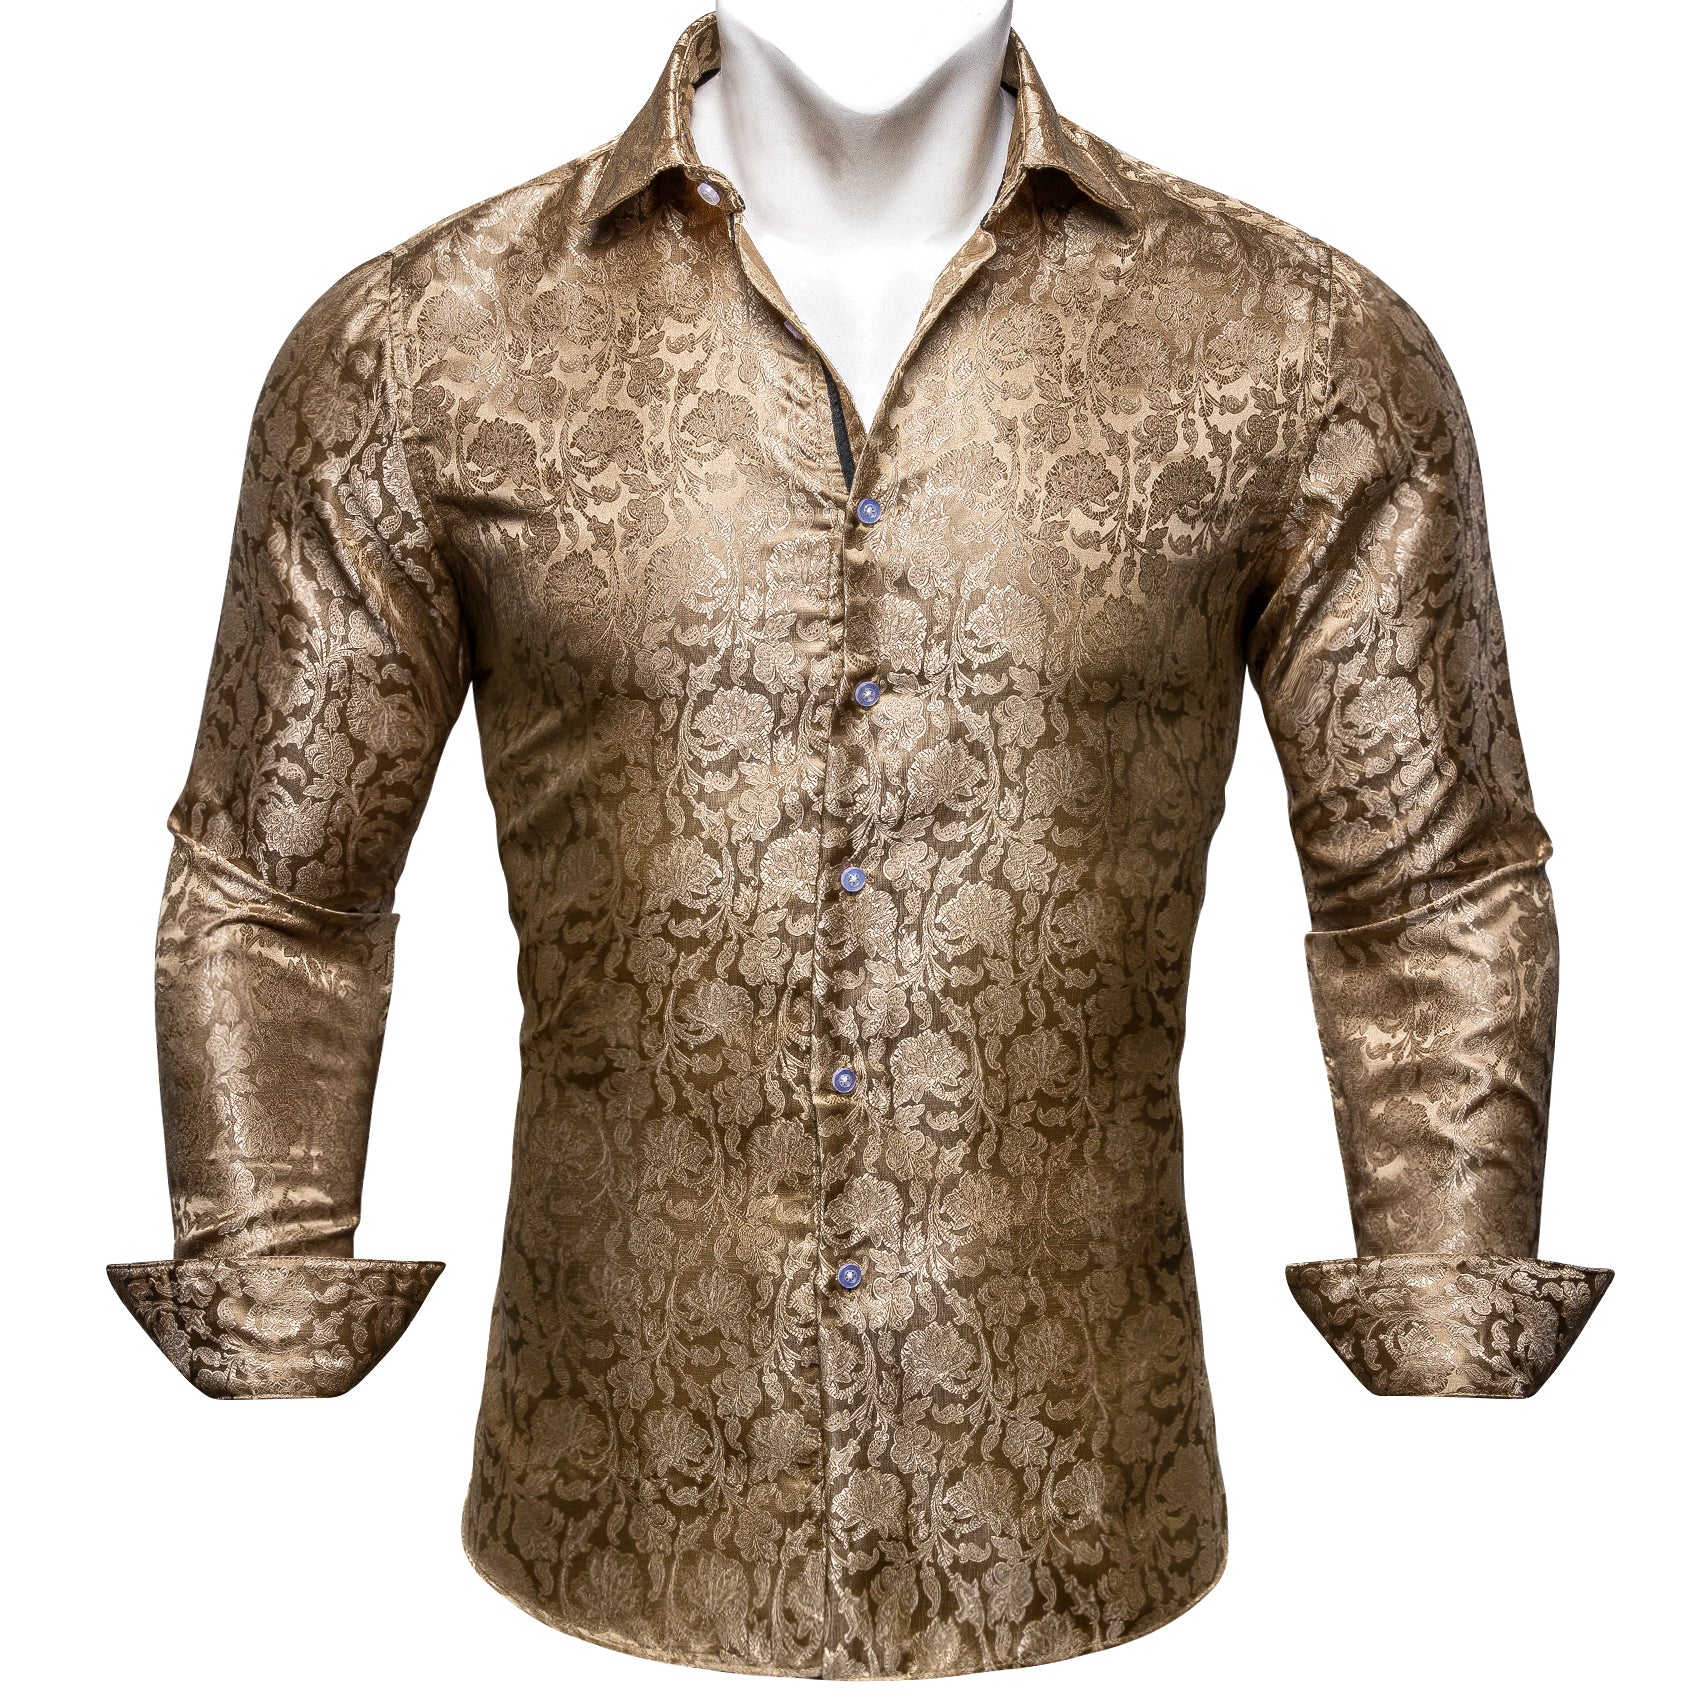 Barry.wang Golden Floral Silk Shirt